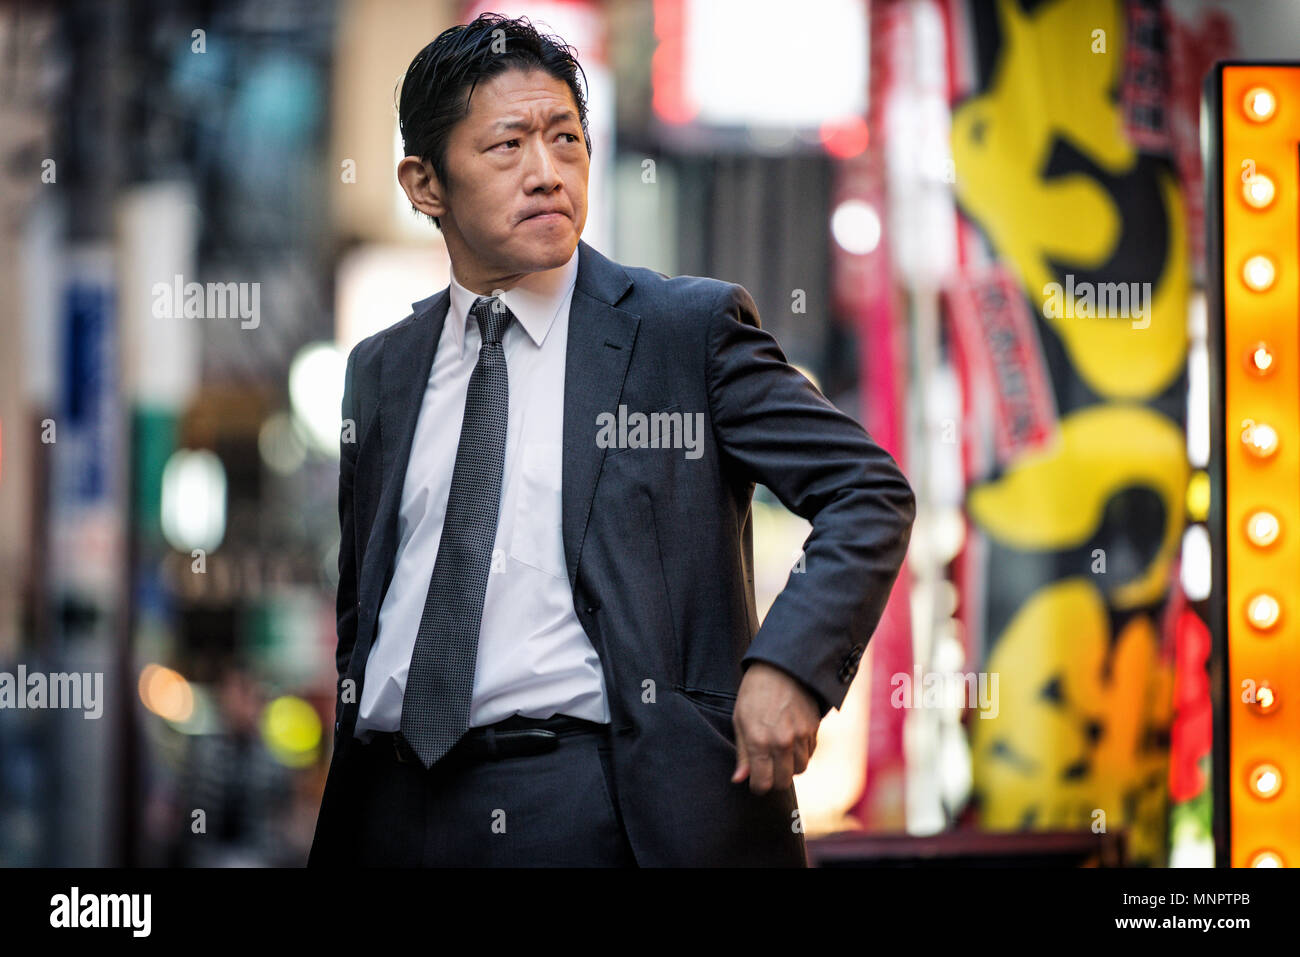 Japanische Geschaftsmann Walking Im Freien Asiatischer Mann Mit Eleganten Anzug Stockfotografie Alamy (Dateityp jpg)